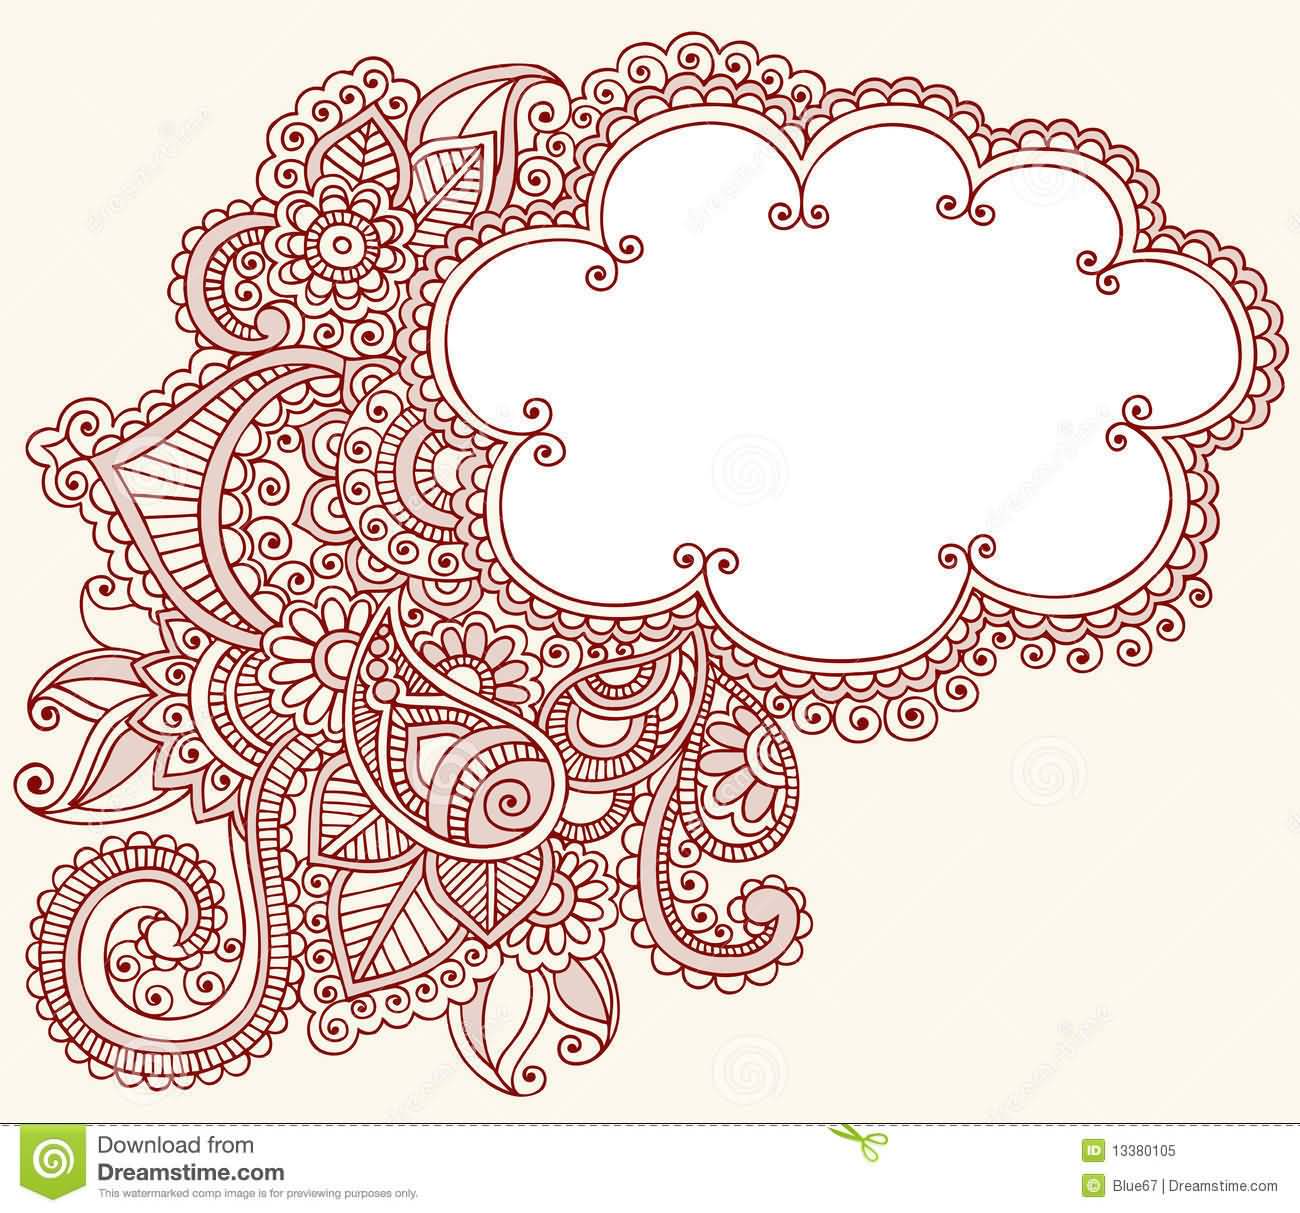 Amazing Cloud Paisley Pattern Tattoo Design